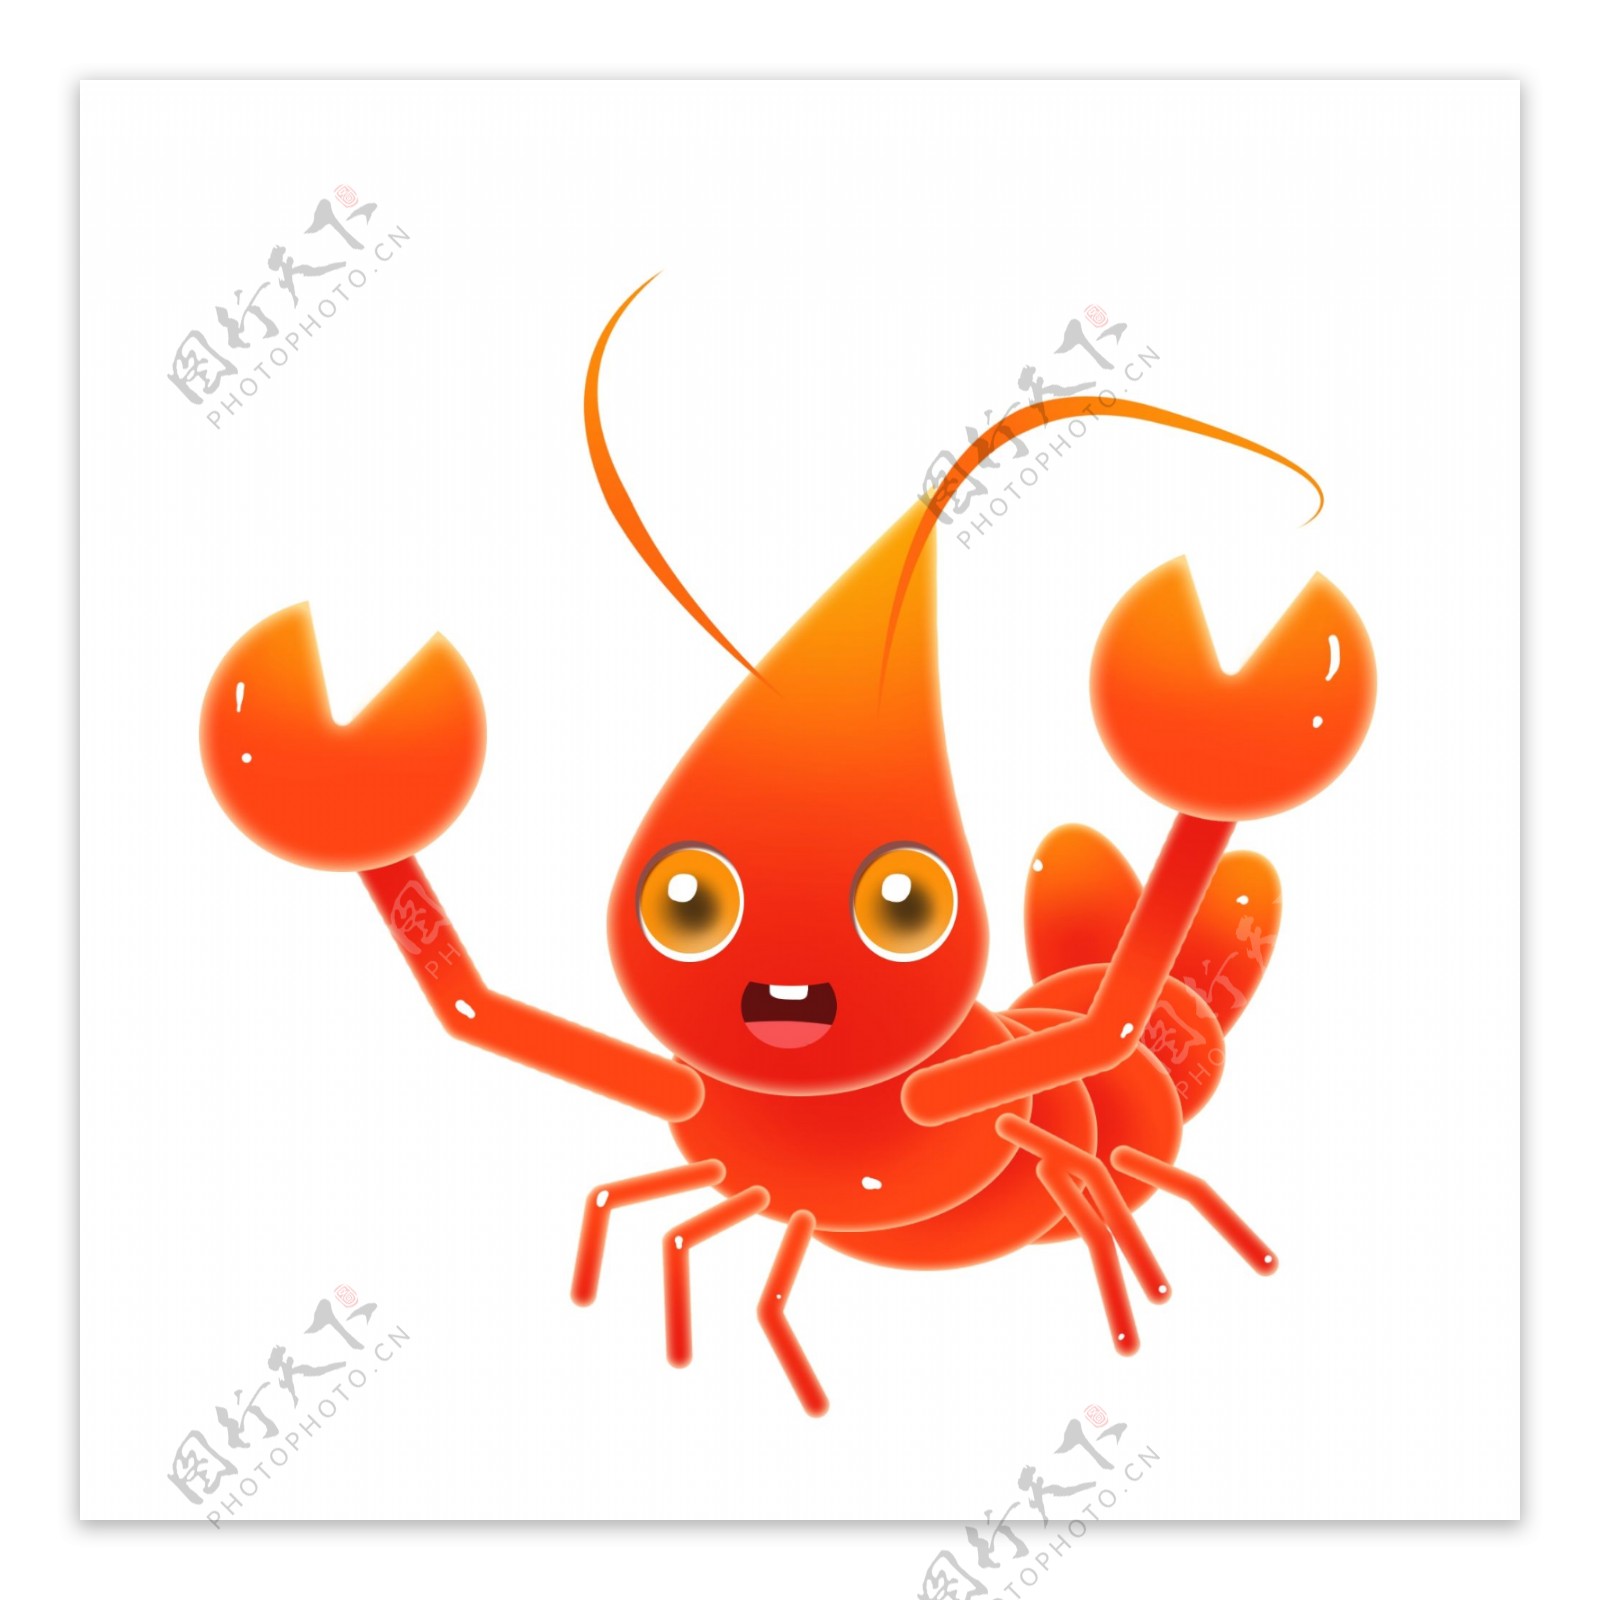 趴着的可爱龙虾插图